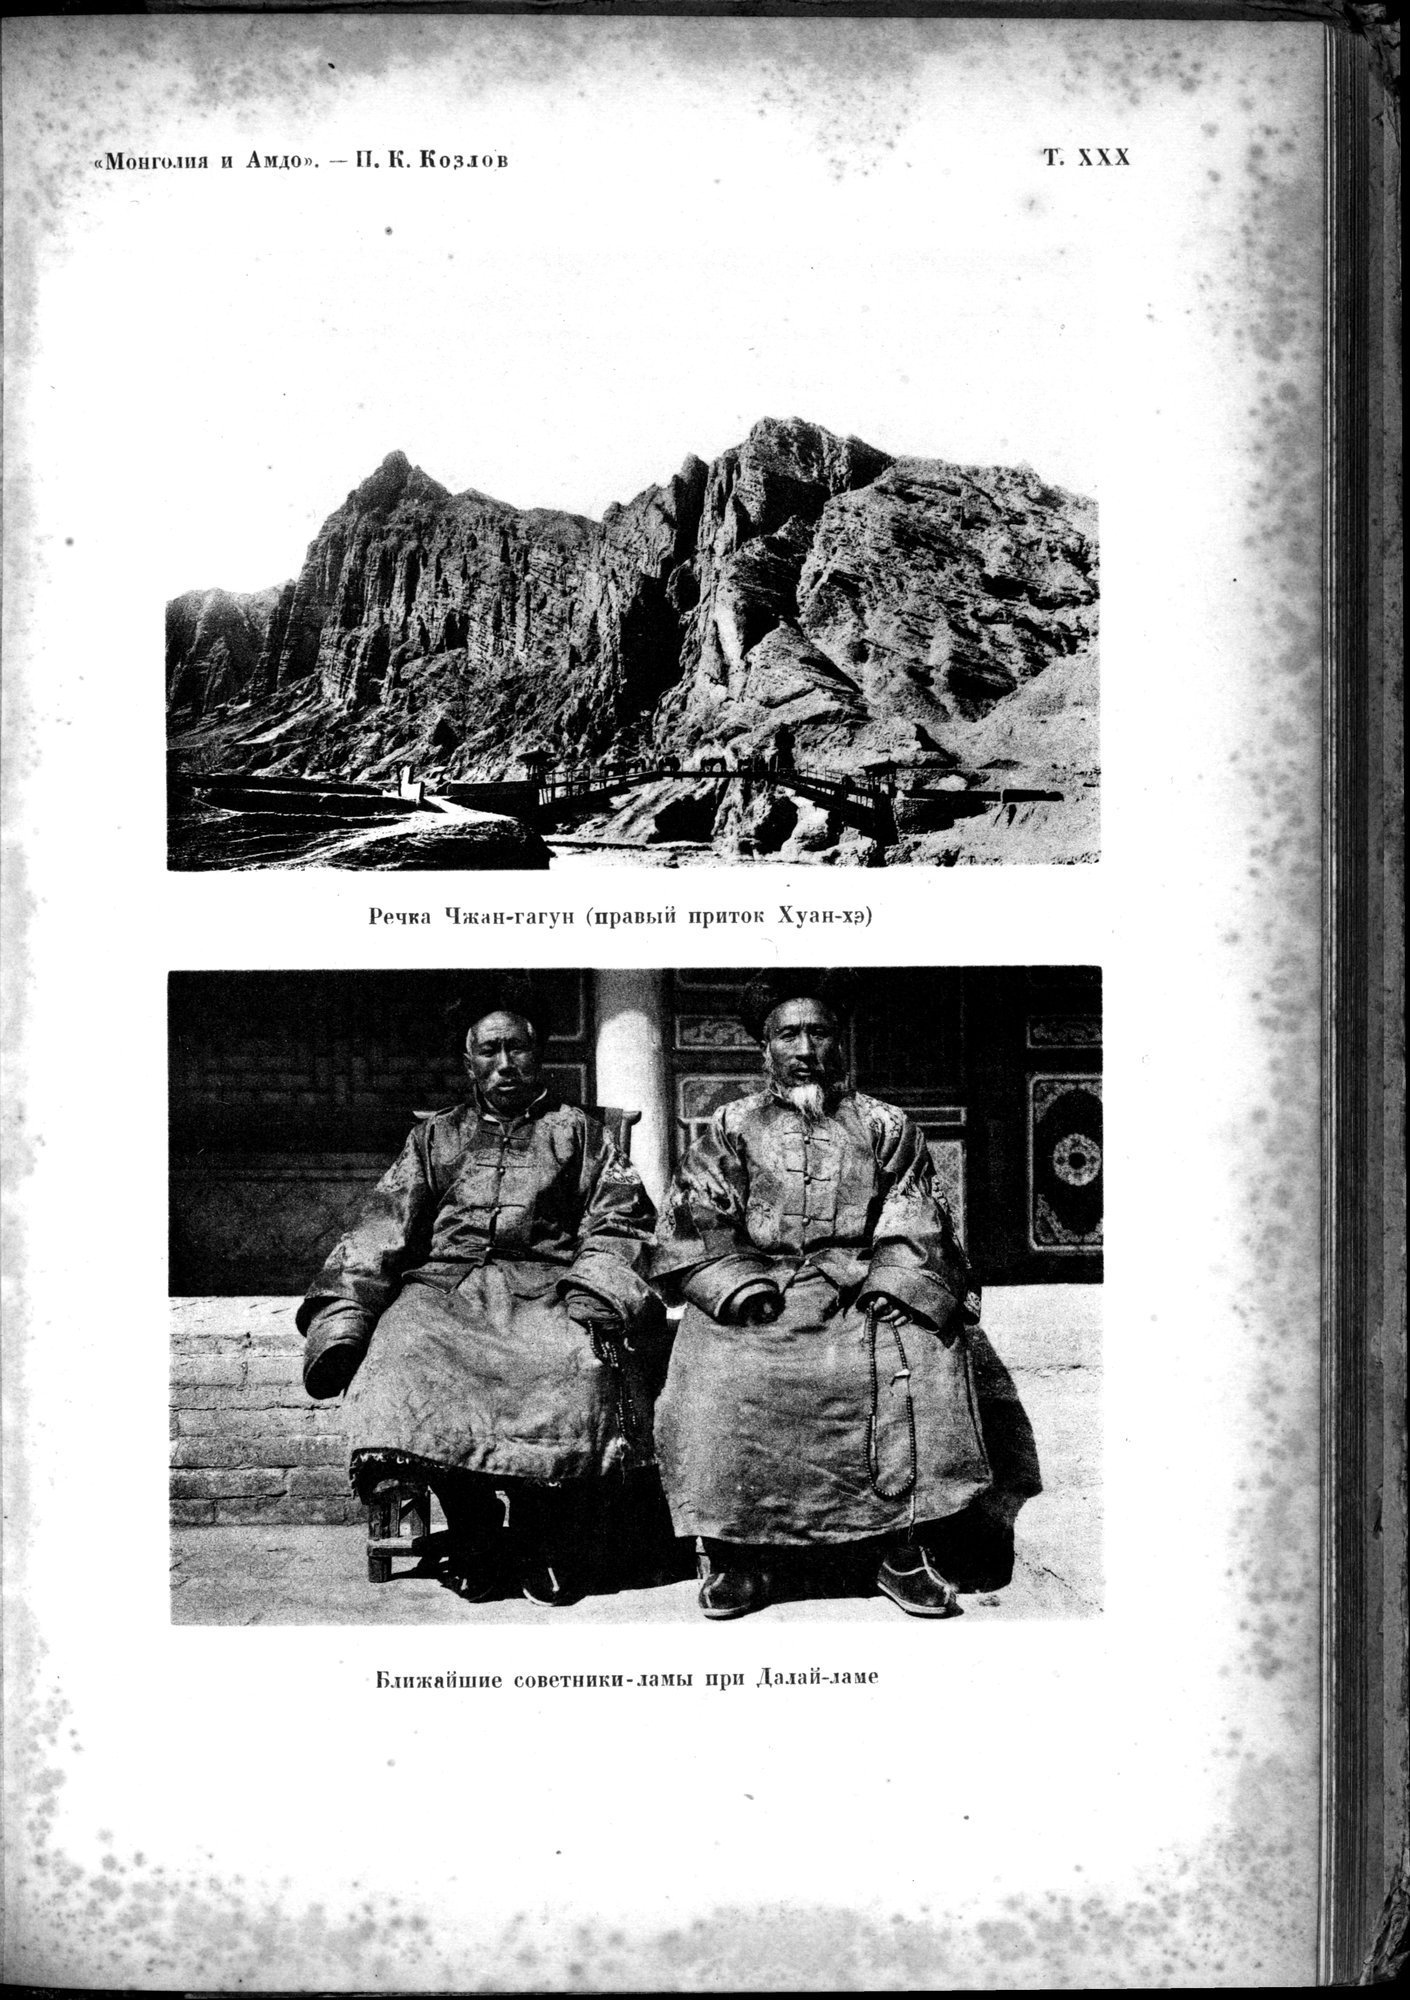 Mongoliya i Amdo i mertby gorod Khara-Khoto : vol.1 / 561 ページ（白黒高解像度画像）